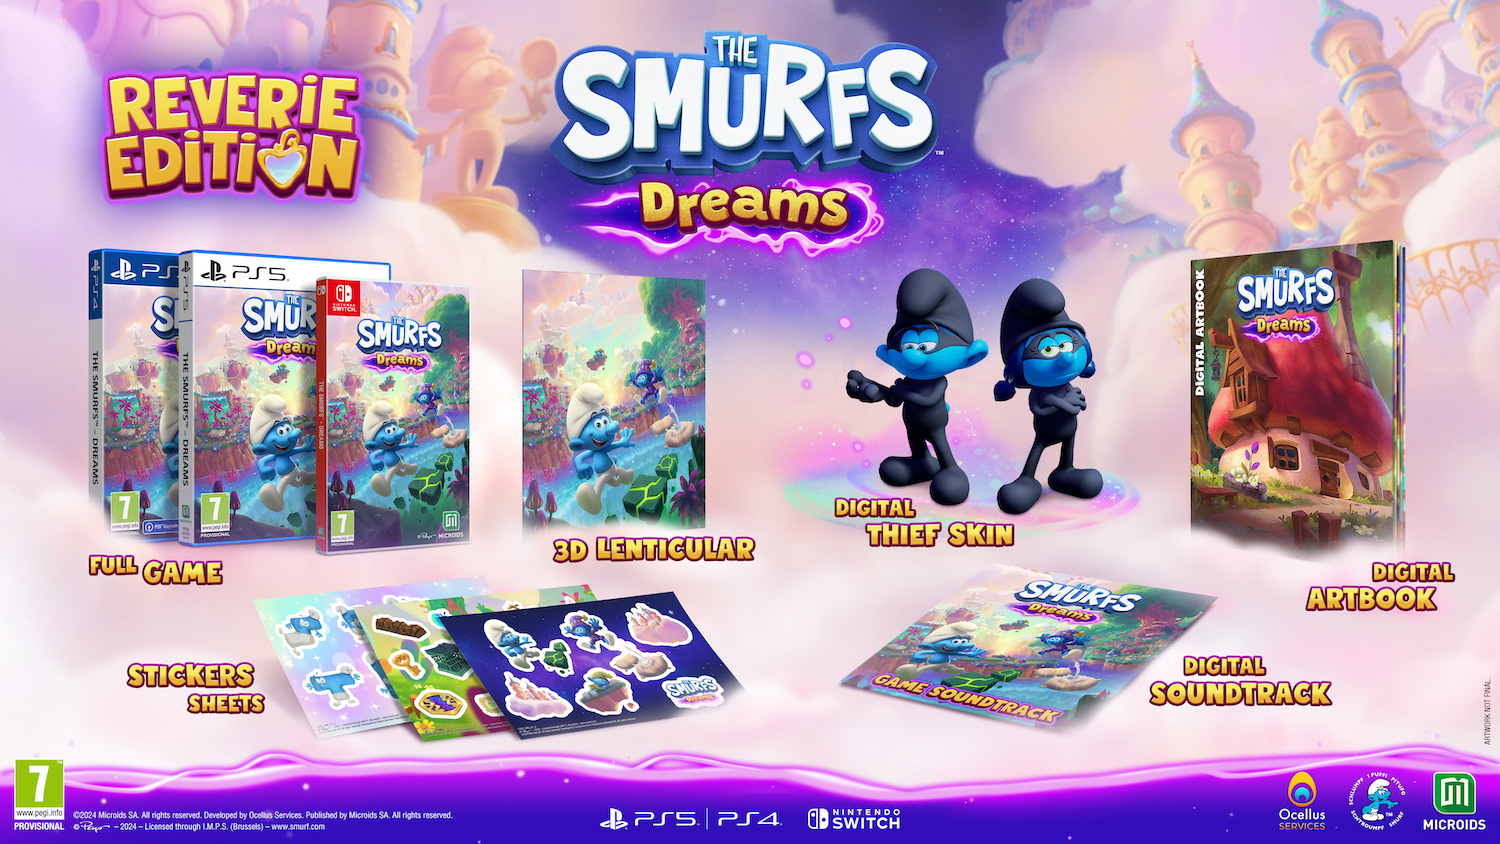 The Smurfs Dreams